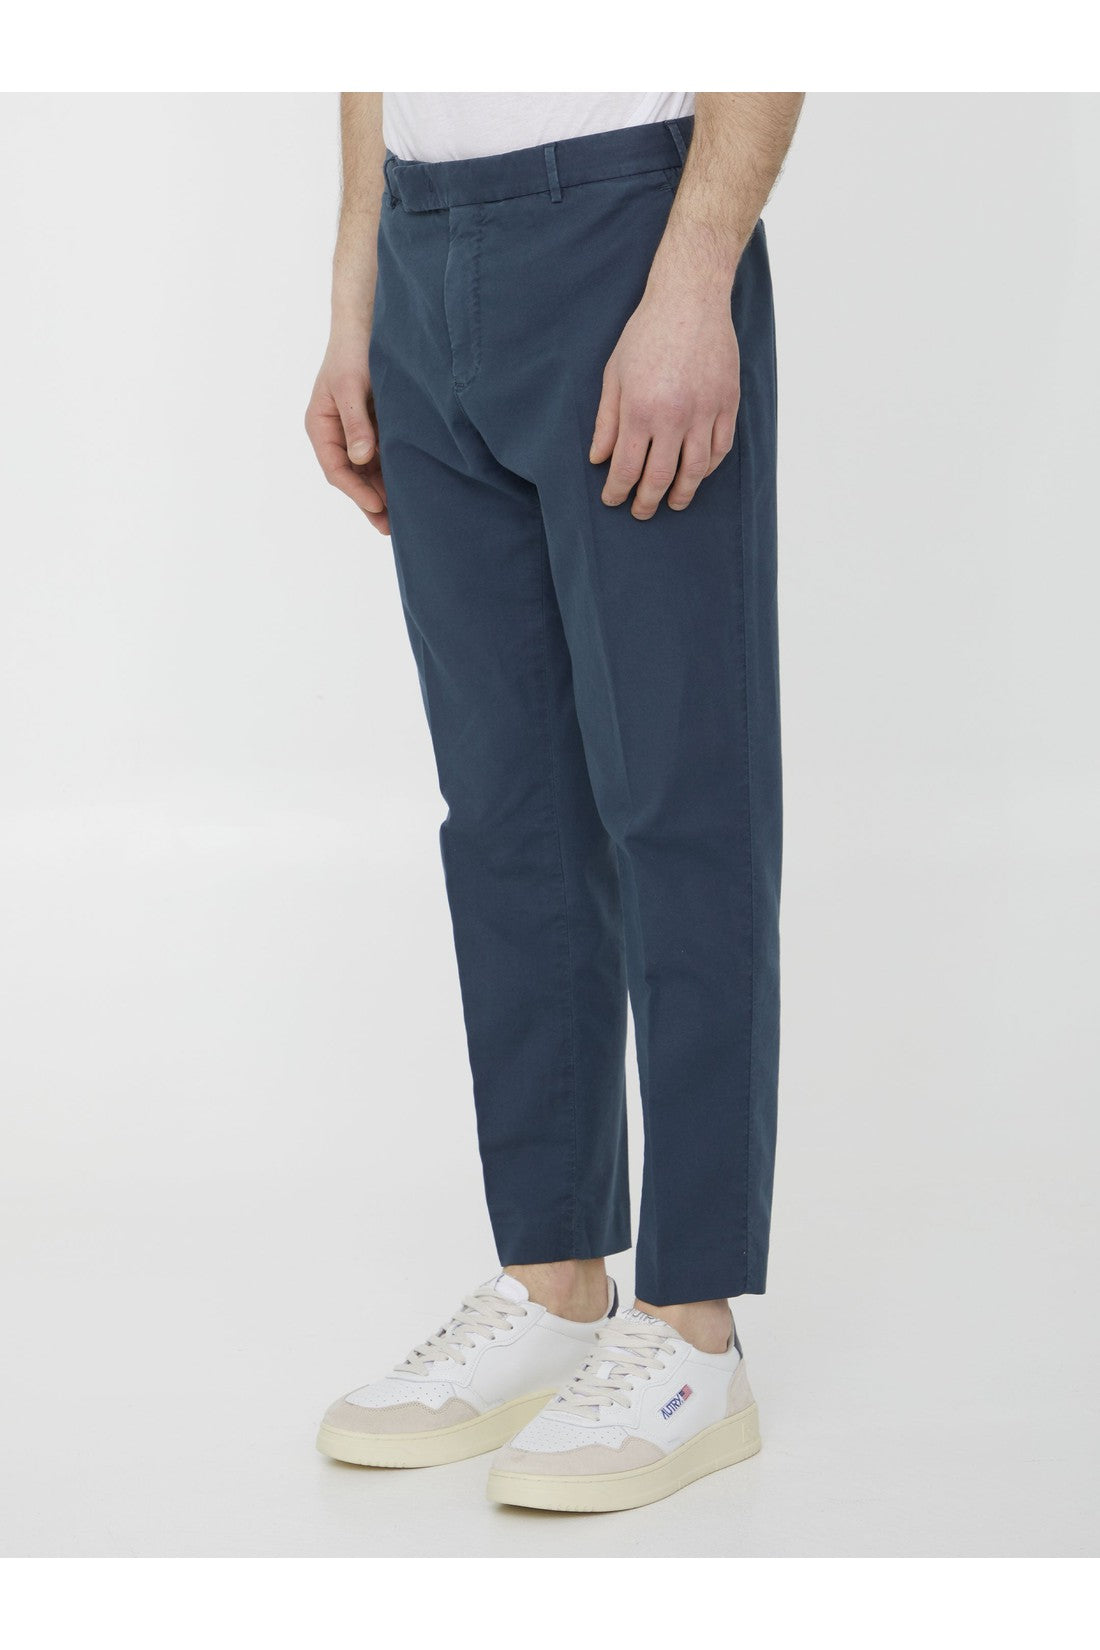 Blue cotton trousers